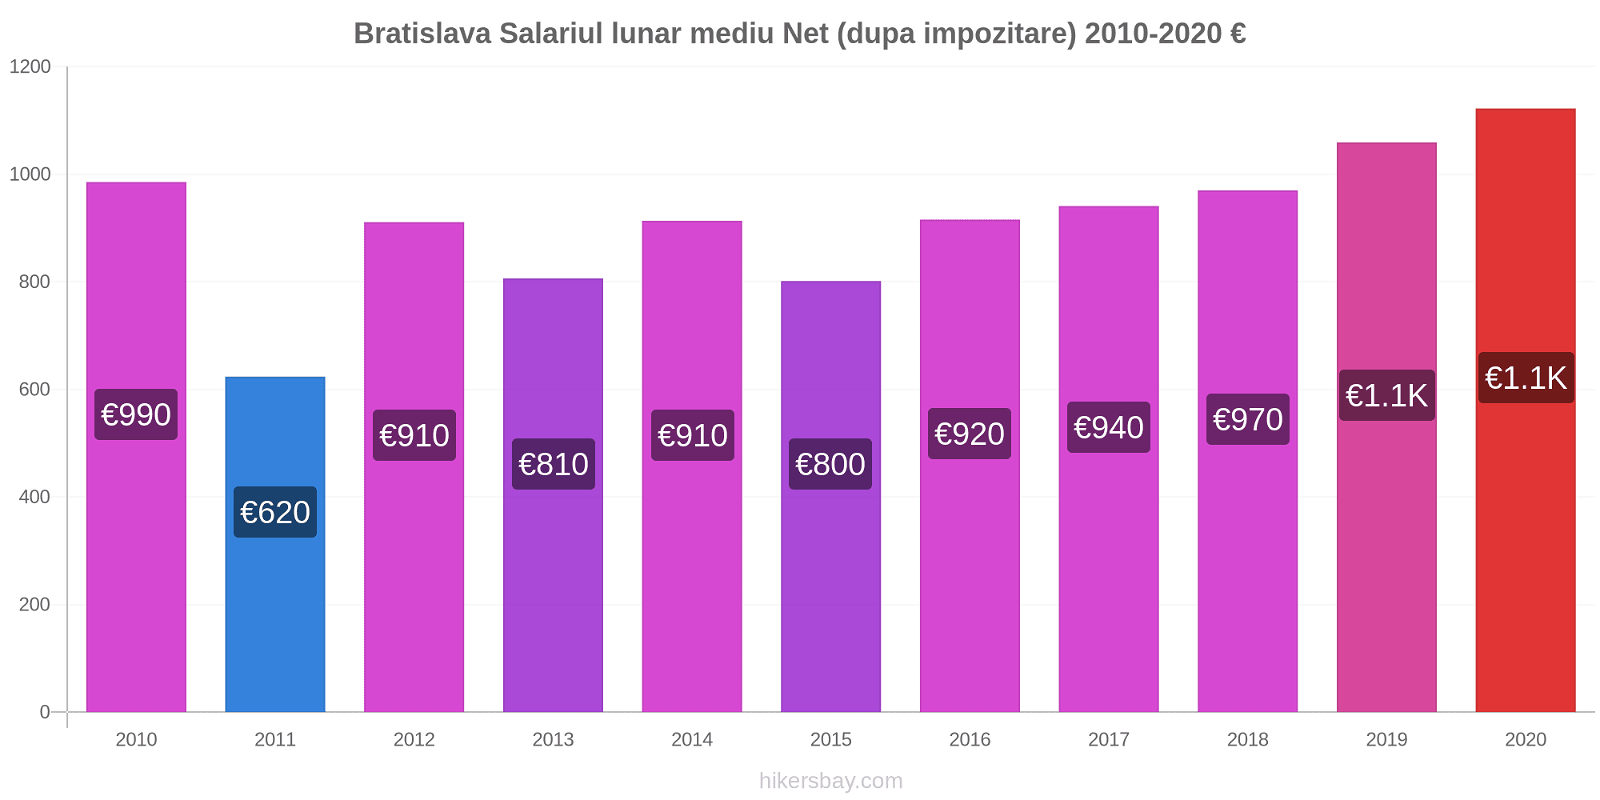 Bratislava modificări de preț Salariul lunar mediu Net (dupa impozitare) hikersbay.com